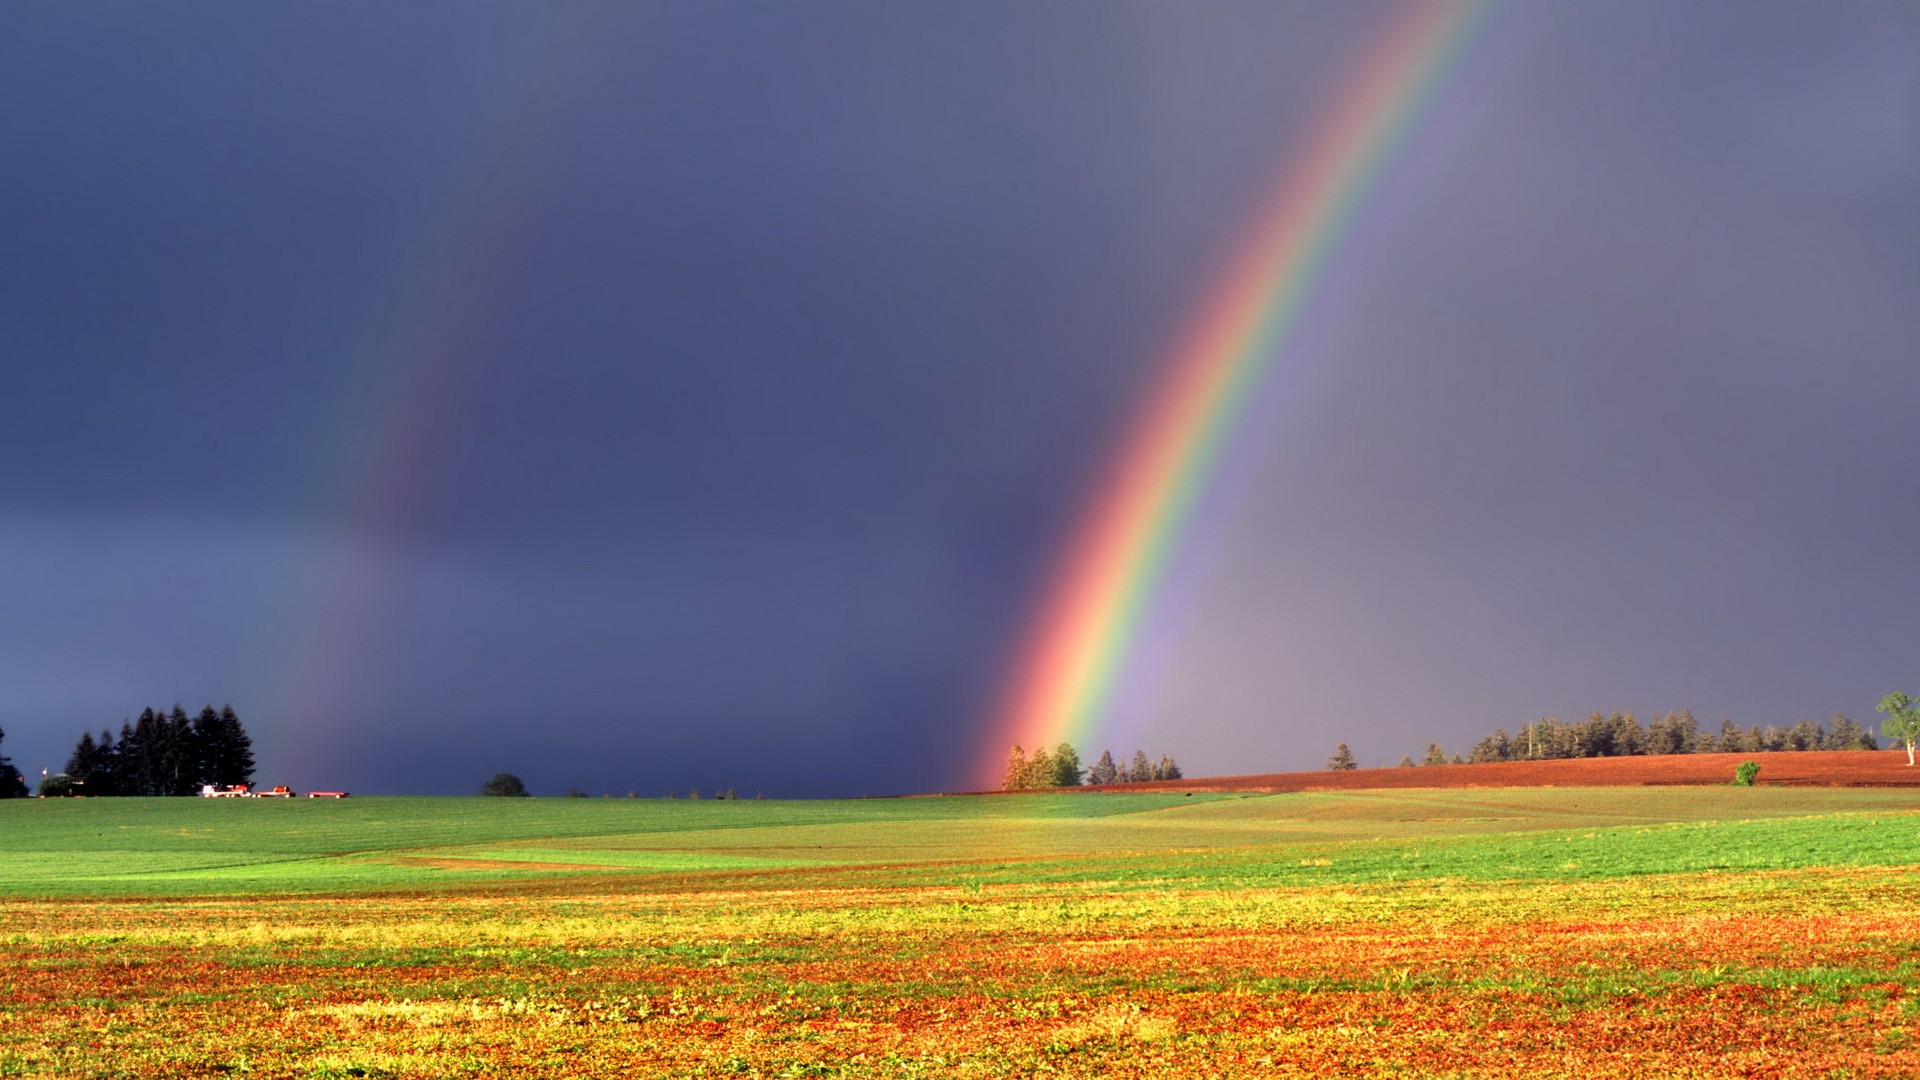 雨后彩虹图片大全 雨后彩虹的图片